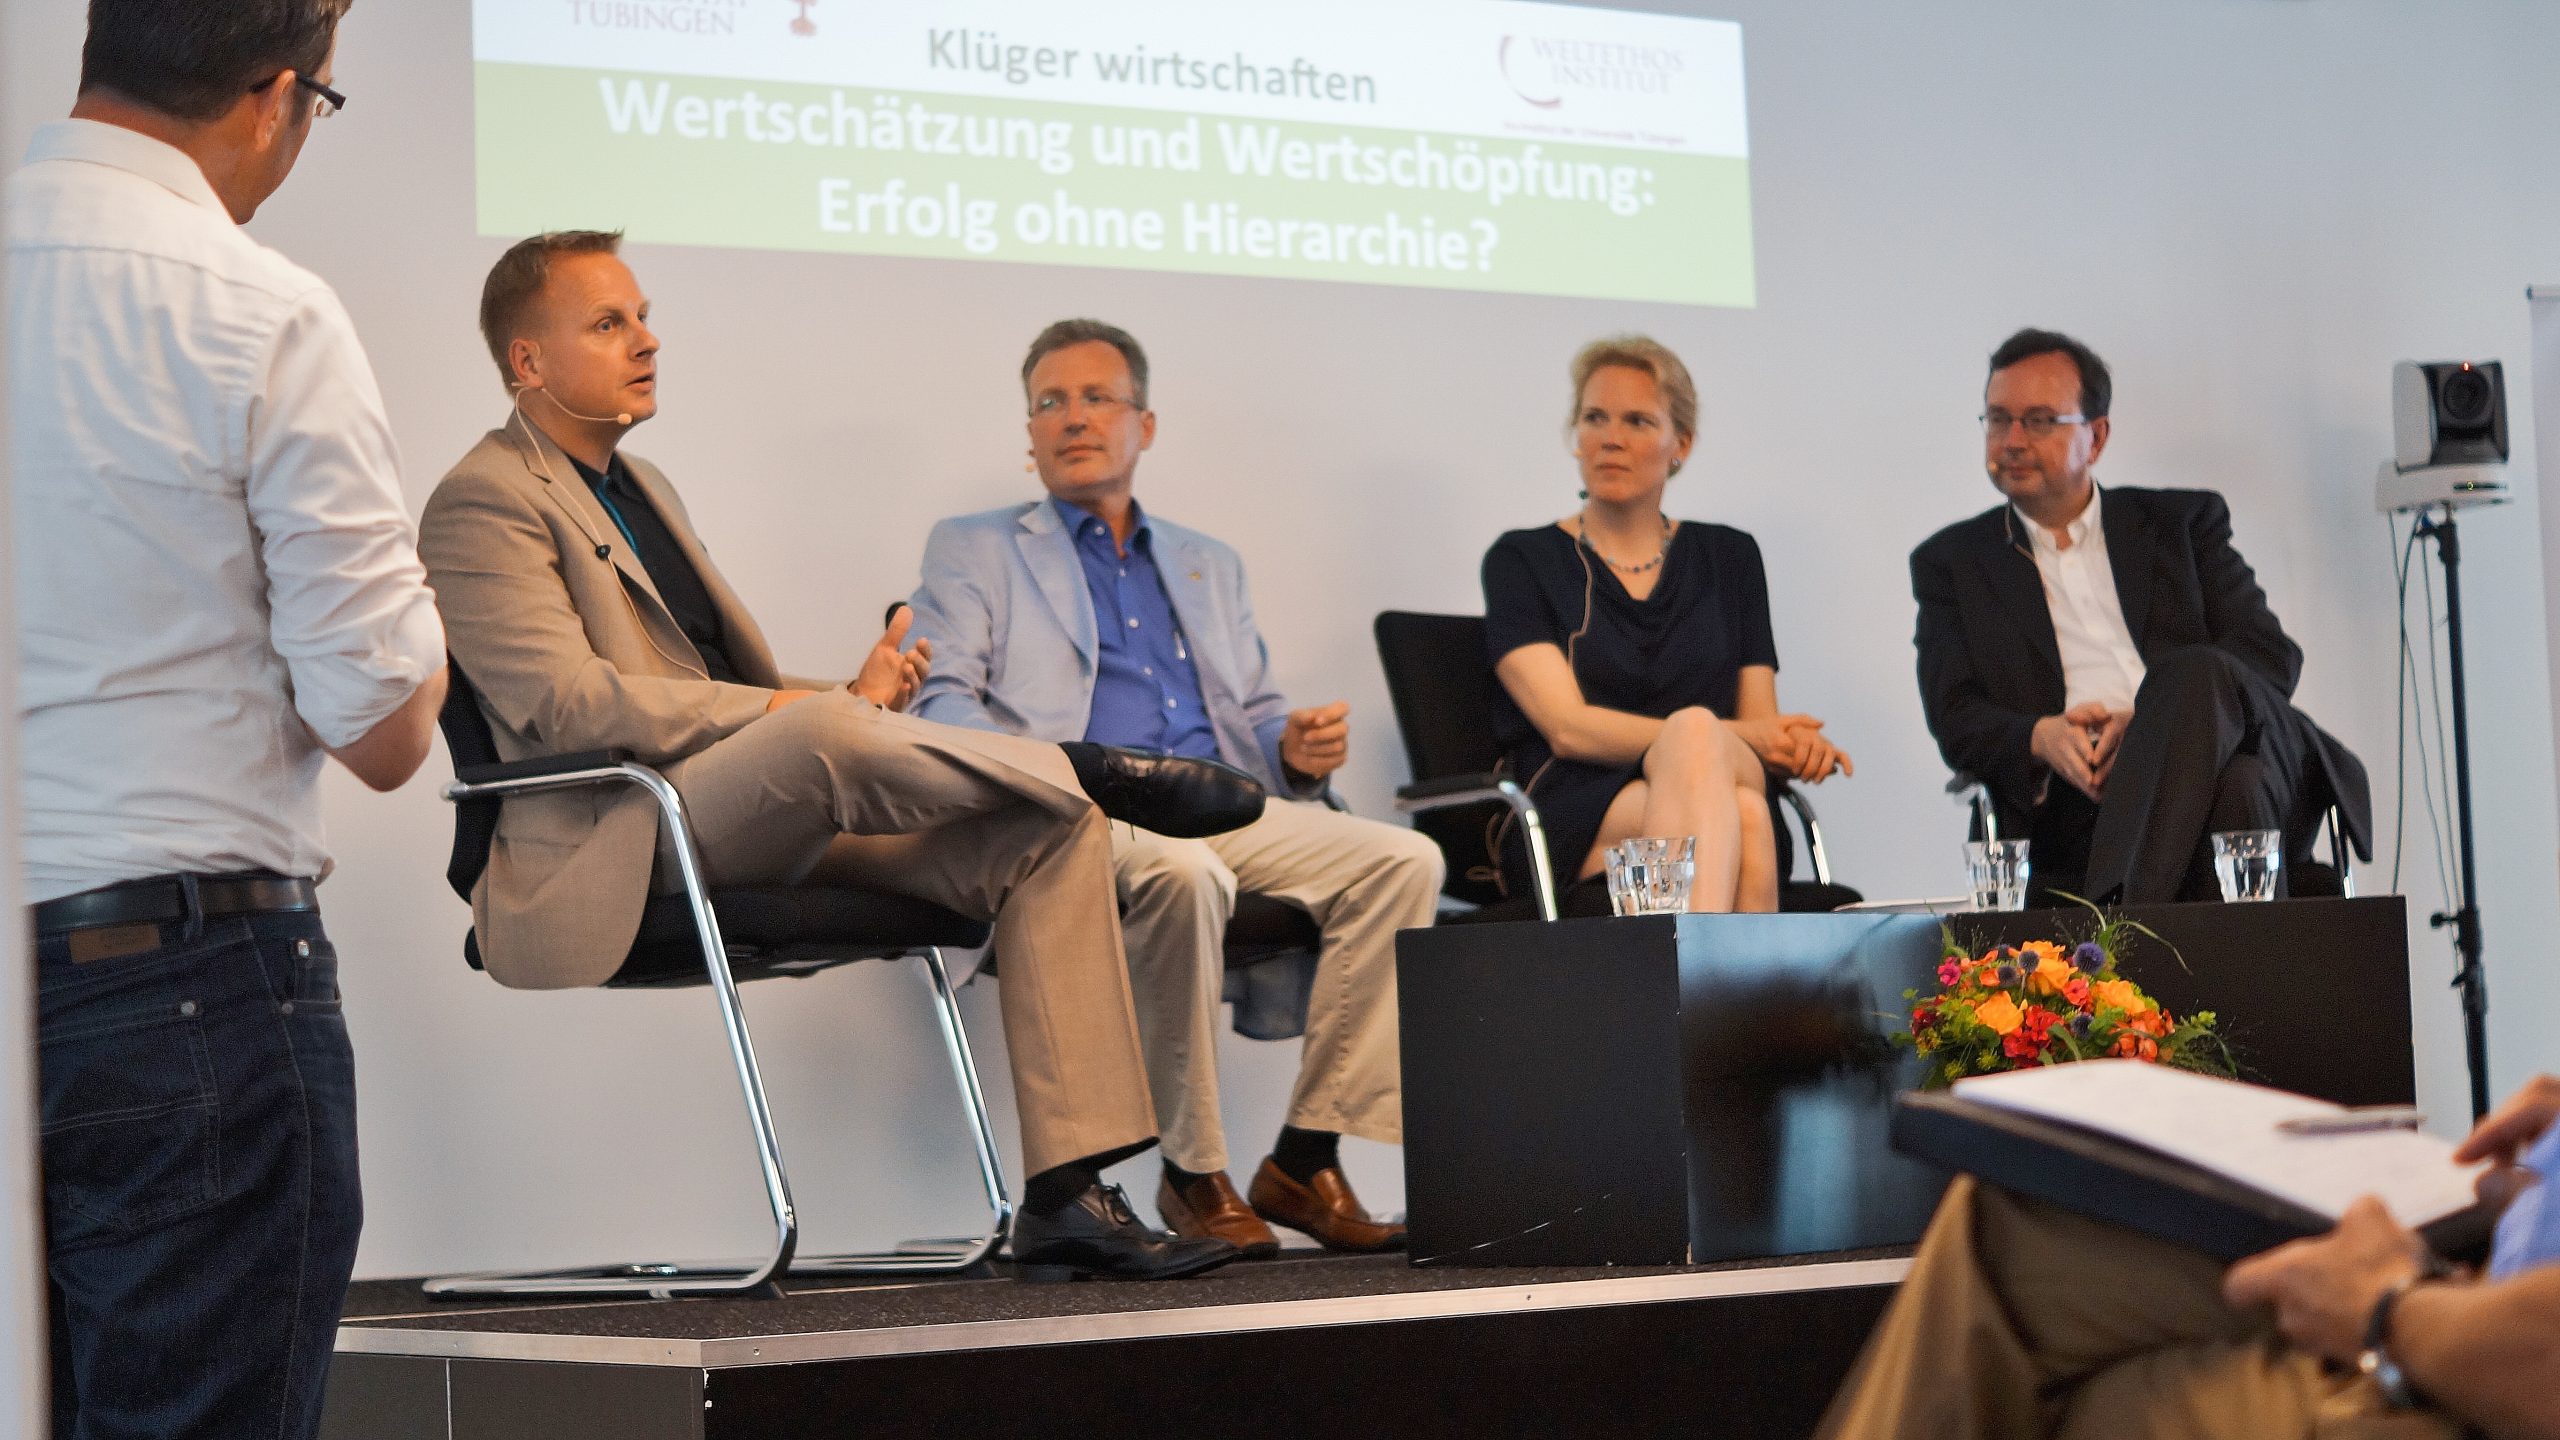 Das Bild zeigt Weltethos Tübingen Gründungsdirektor Claus Dierksmeier mit 3 Gästen bei einer Veranstaltung auf der Bühne sitzend.